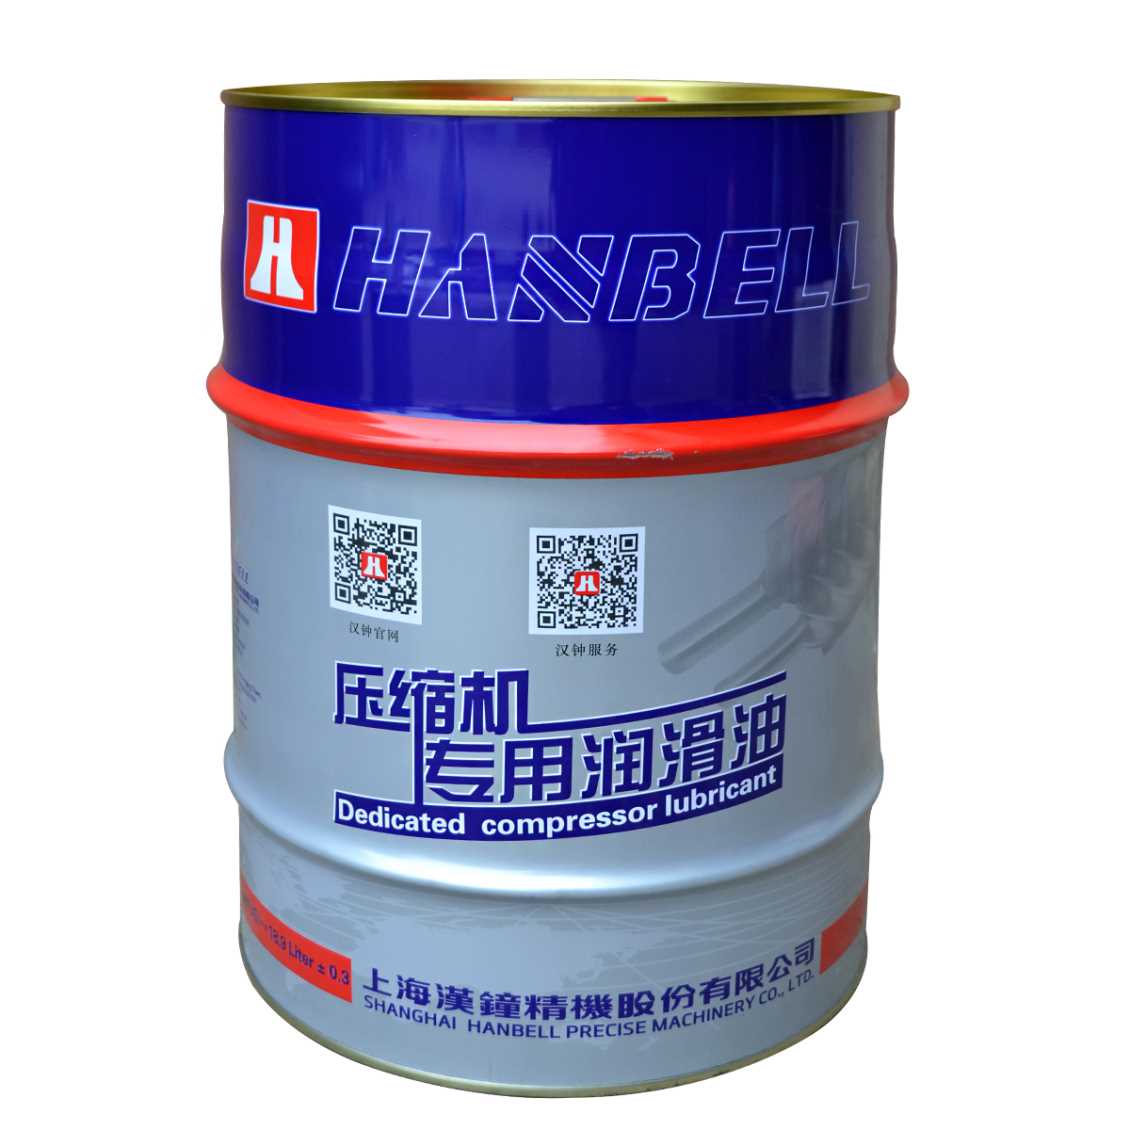 文山上海汉钟低温制冷压缩机油 螺杆机油 HBR- B03汉钟冷冻润滑油